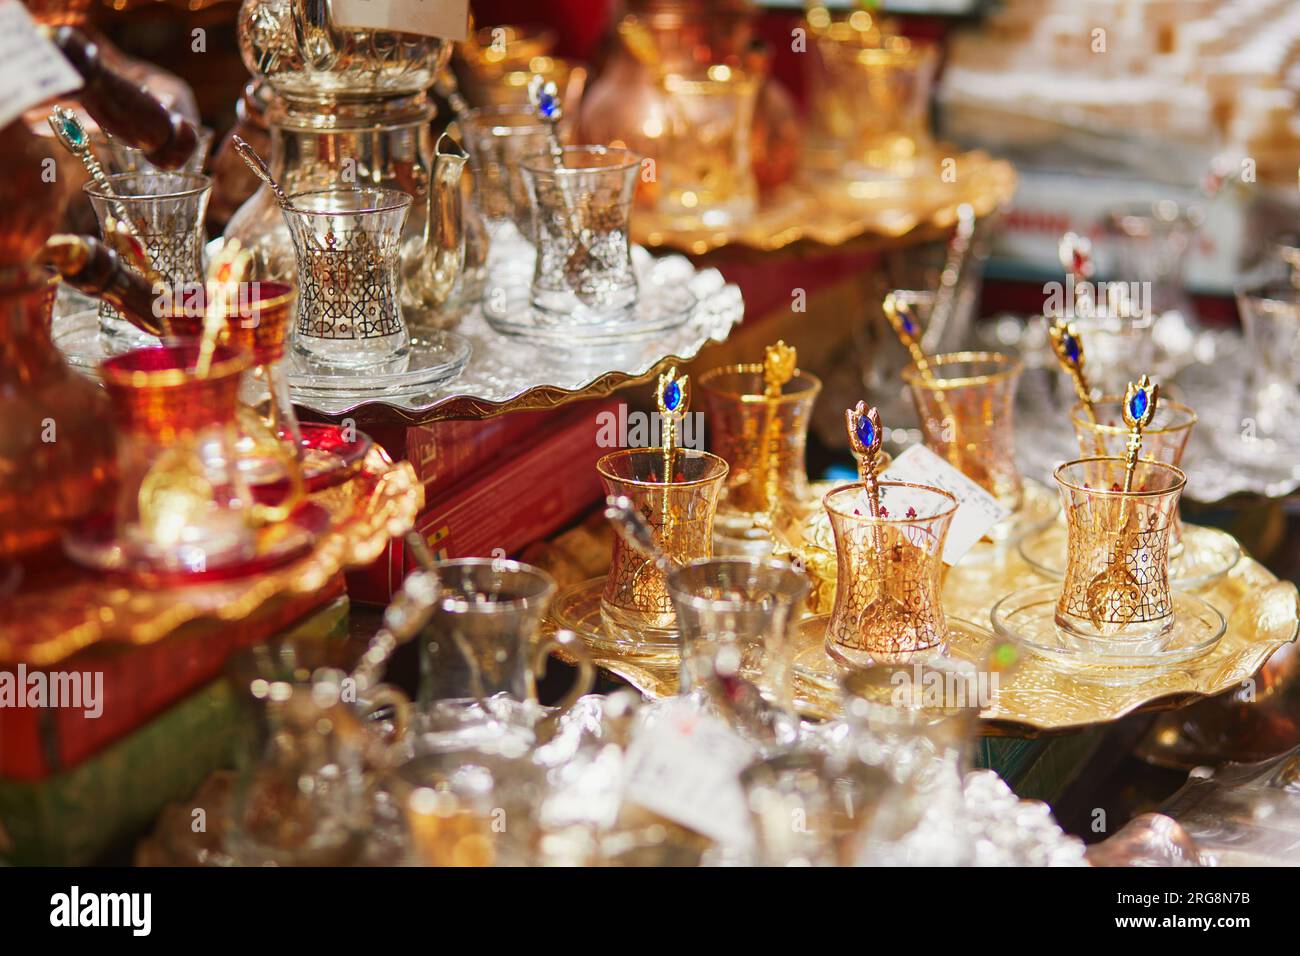 Splendido set da tè sul Bazar egiziano o sul Bazar delle spezie, uno dei più grandi bazar di Istanbul, Turchia. Il mercato vende spezie, dolci, gioielli, fr. Secchi Foto Stock